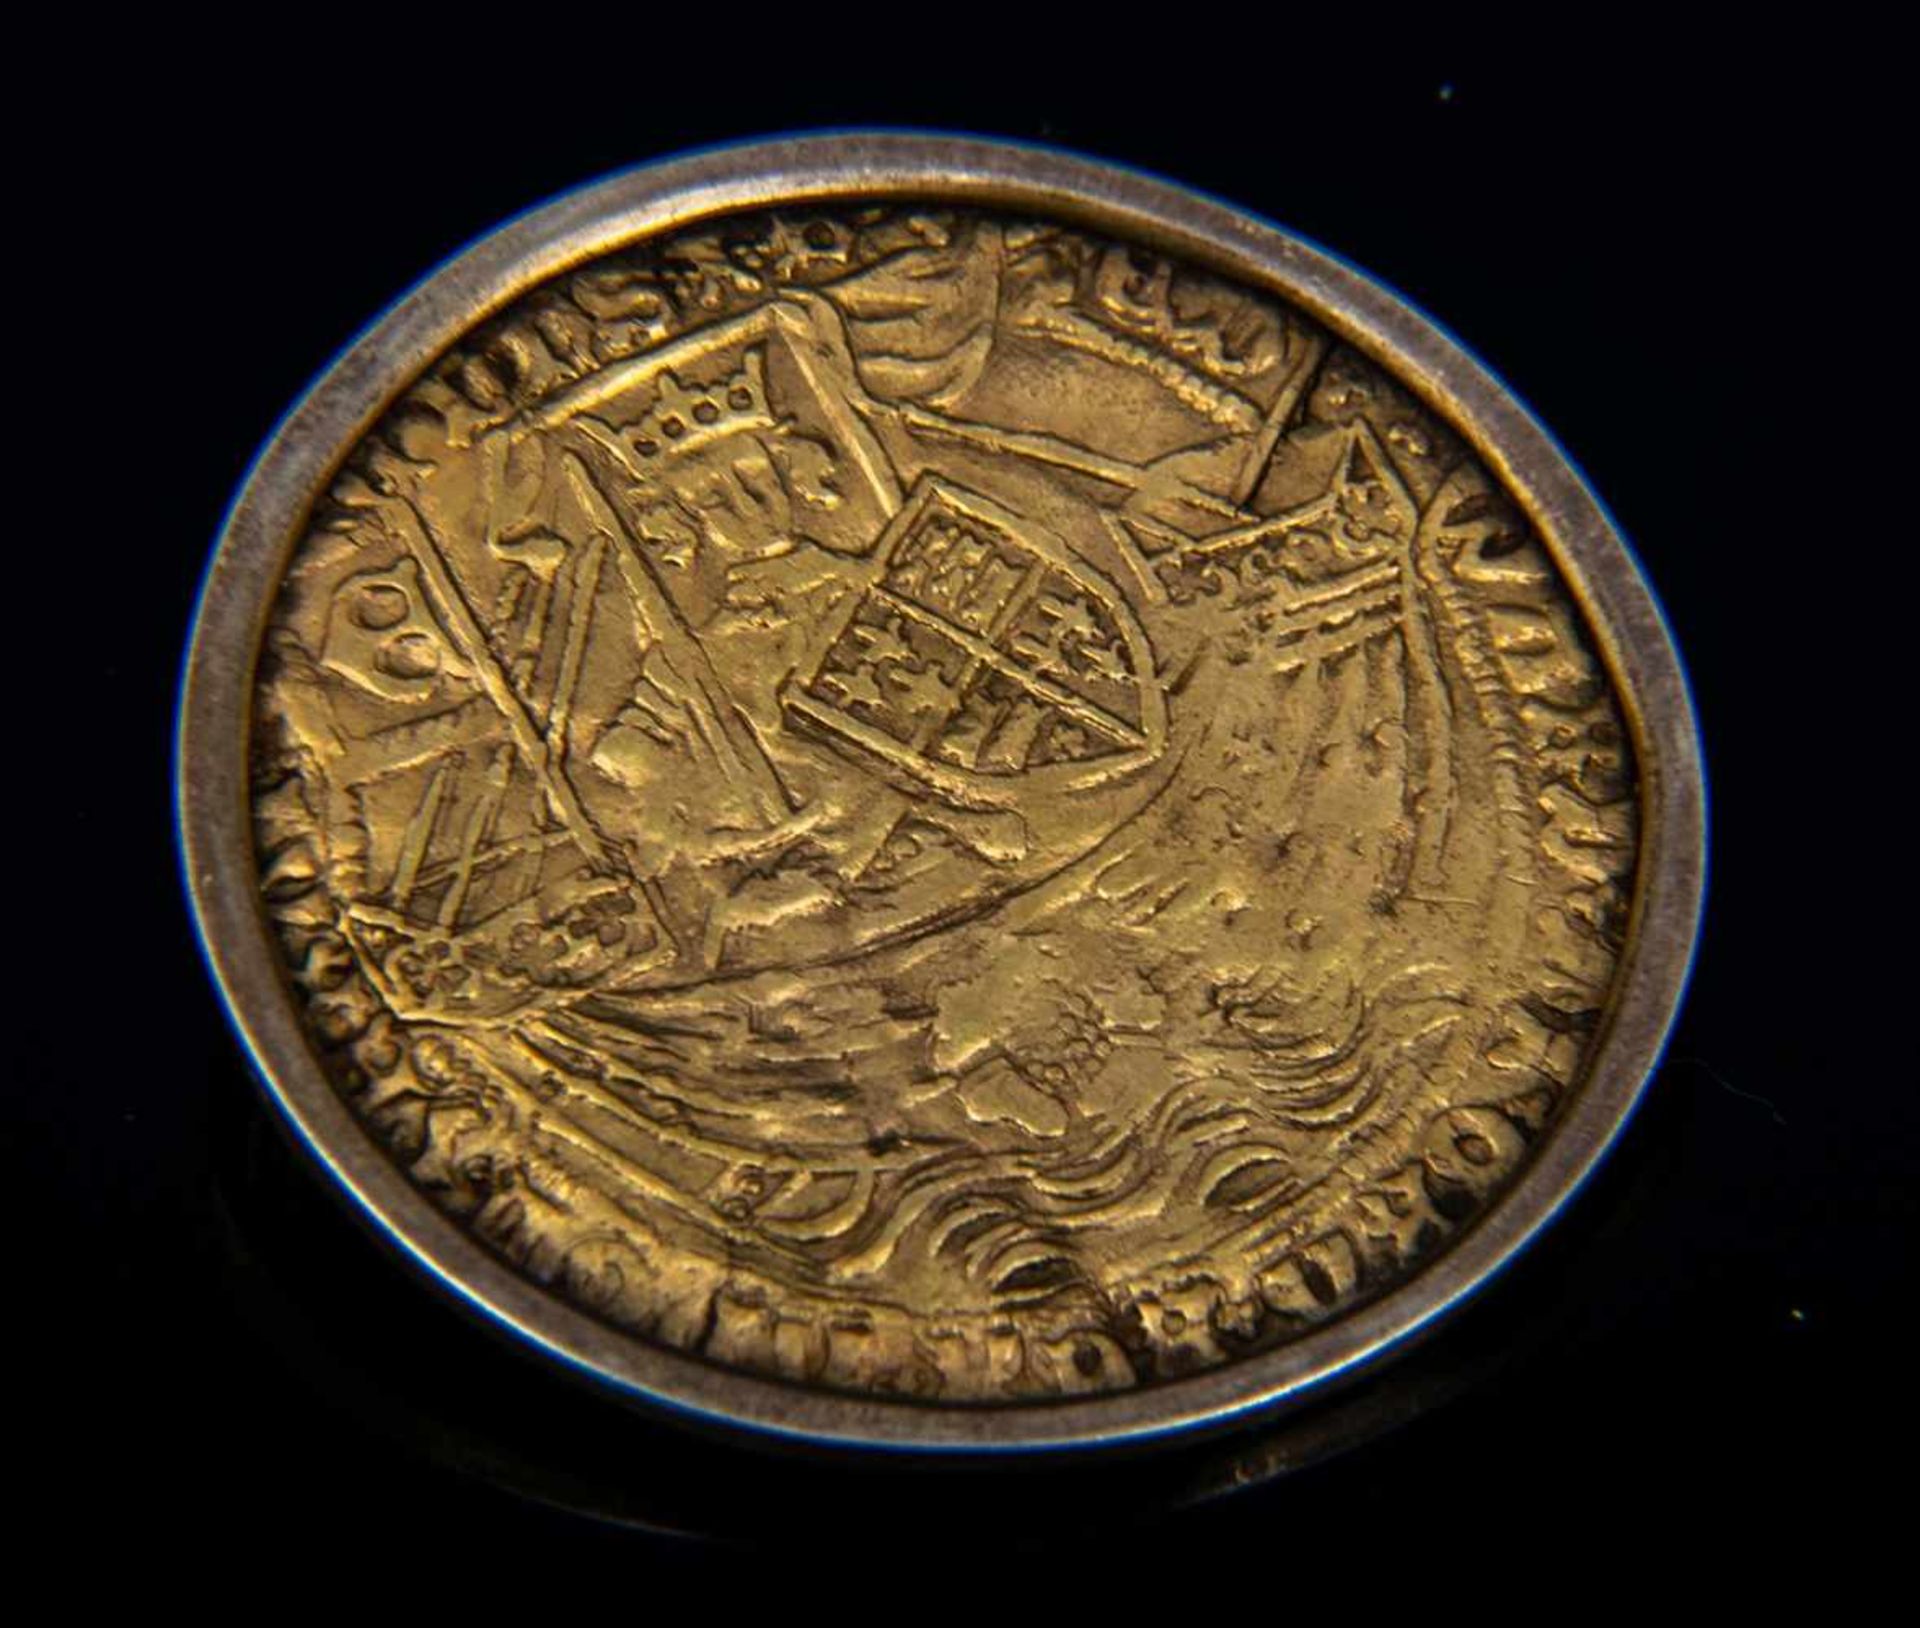 GOLD RYAL / ROSE NOBLE - Goldmünze. England 15. - 17. Jhd., vorderseitig König mit Schwert, Schild &